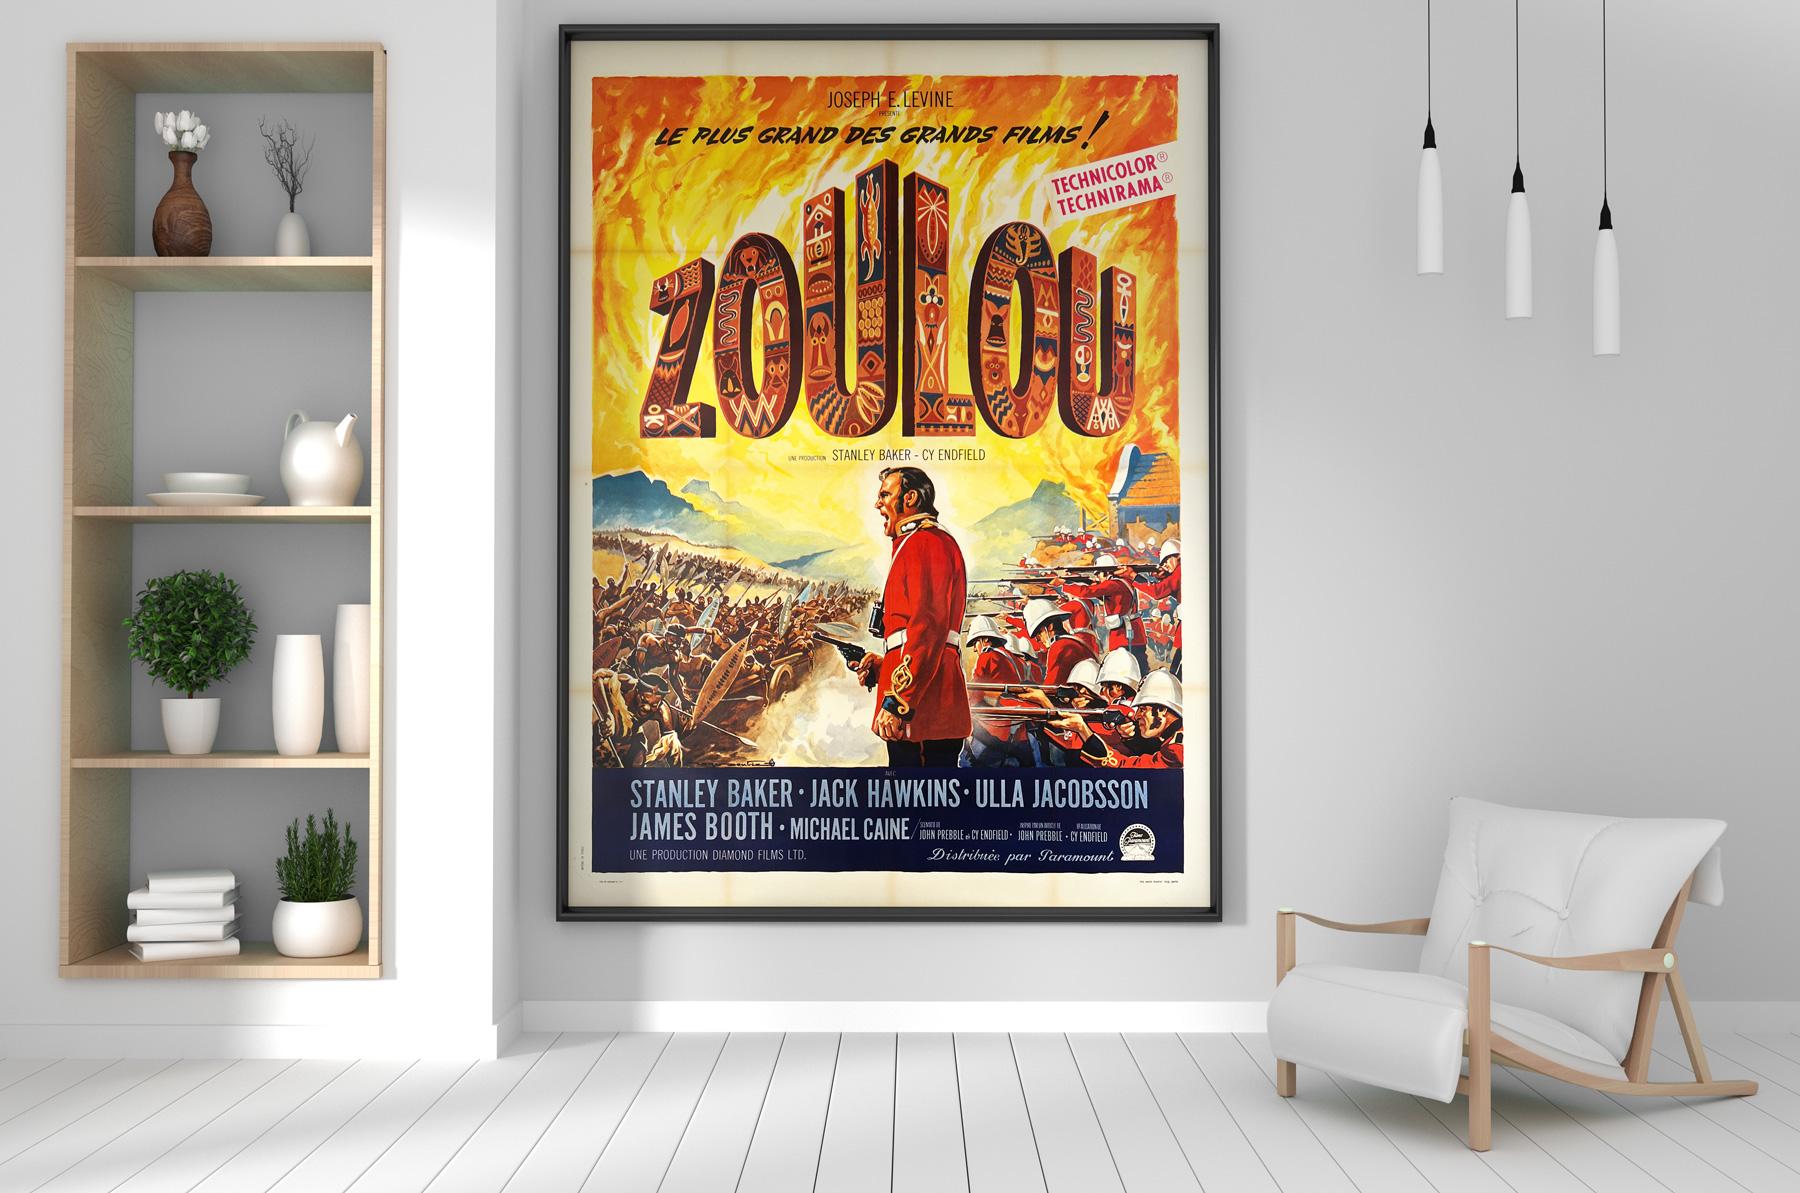 Nous adorons les couleurs riches et profondes et l'art exigeant de l'affiche française du film britannique classique Zulu. L'une des plus belles affiches du titre et un véritable coup de cœur dans ce grand format !

Ce poster vintage a une taille de